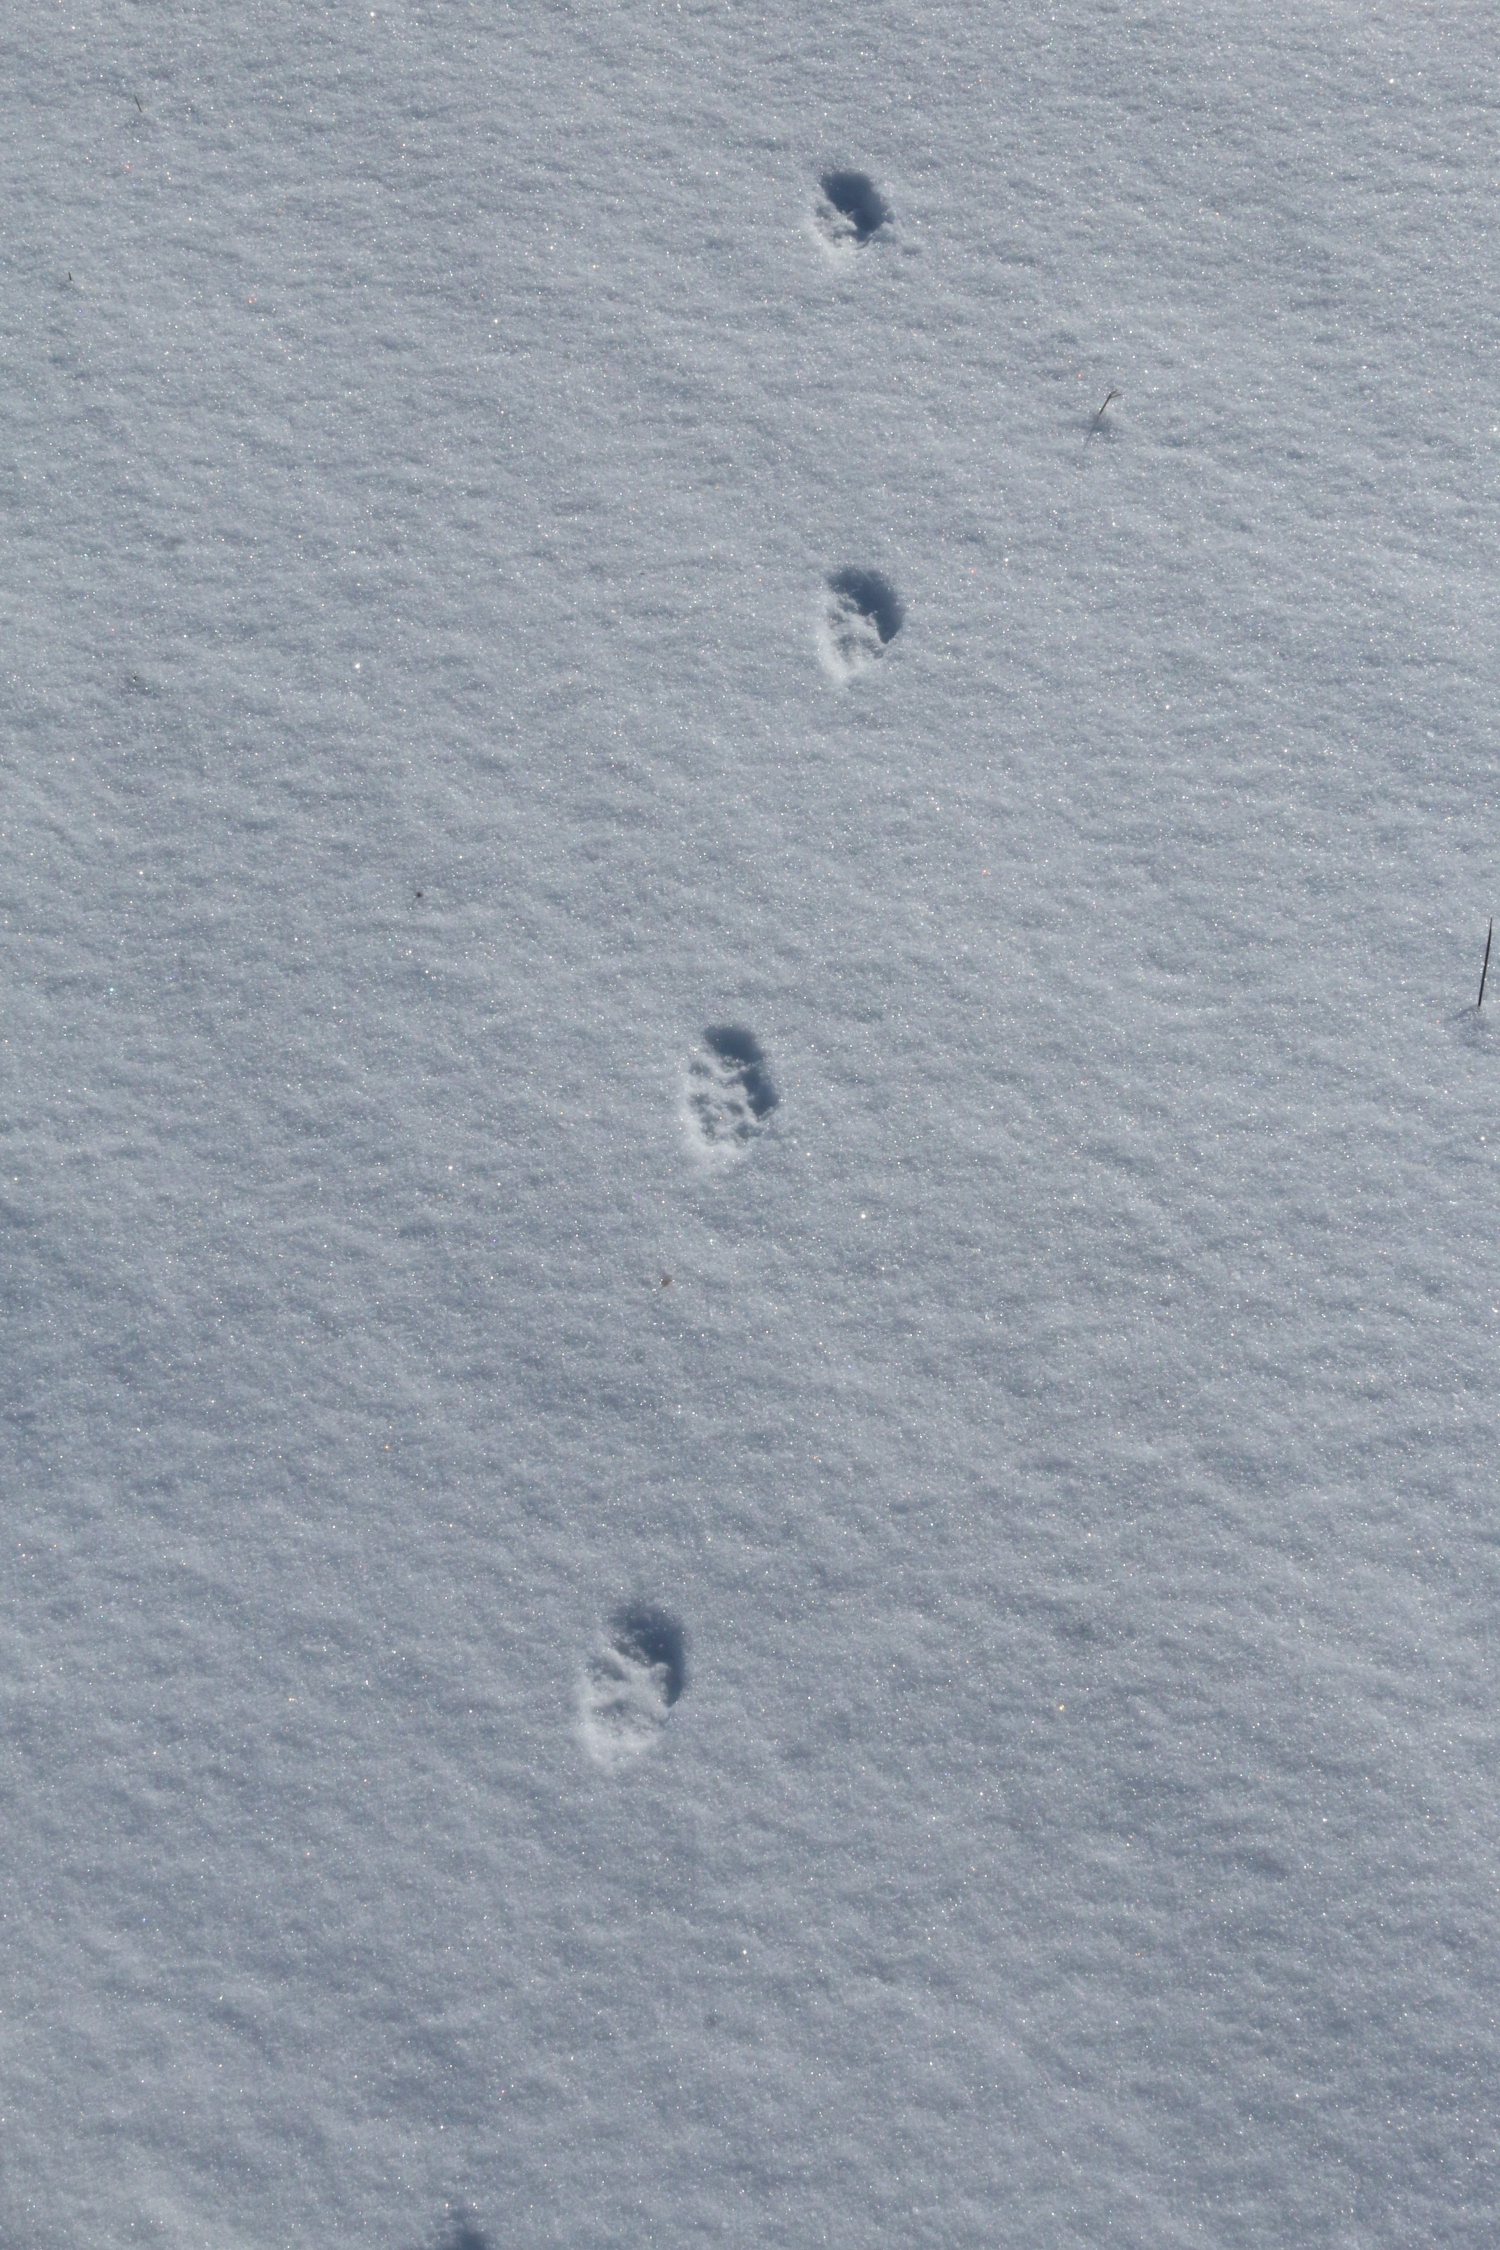 stopní dráha lišky - liška takzvaně čáruje, stopy pěkně v lajně
stopa je čtyřprstá oválná
